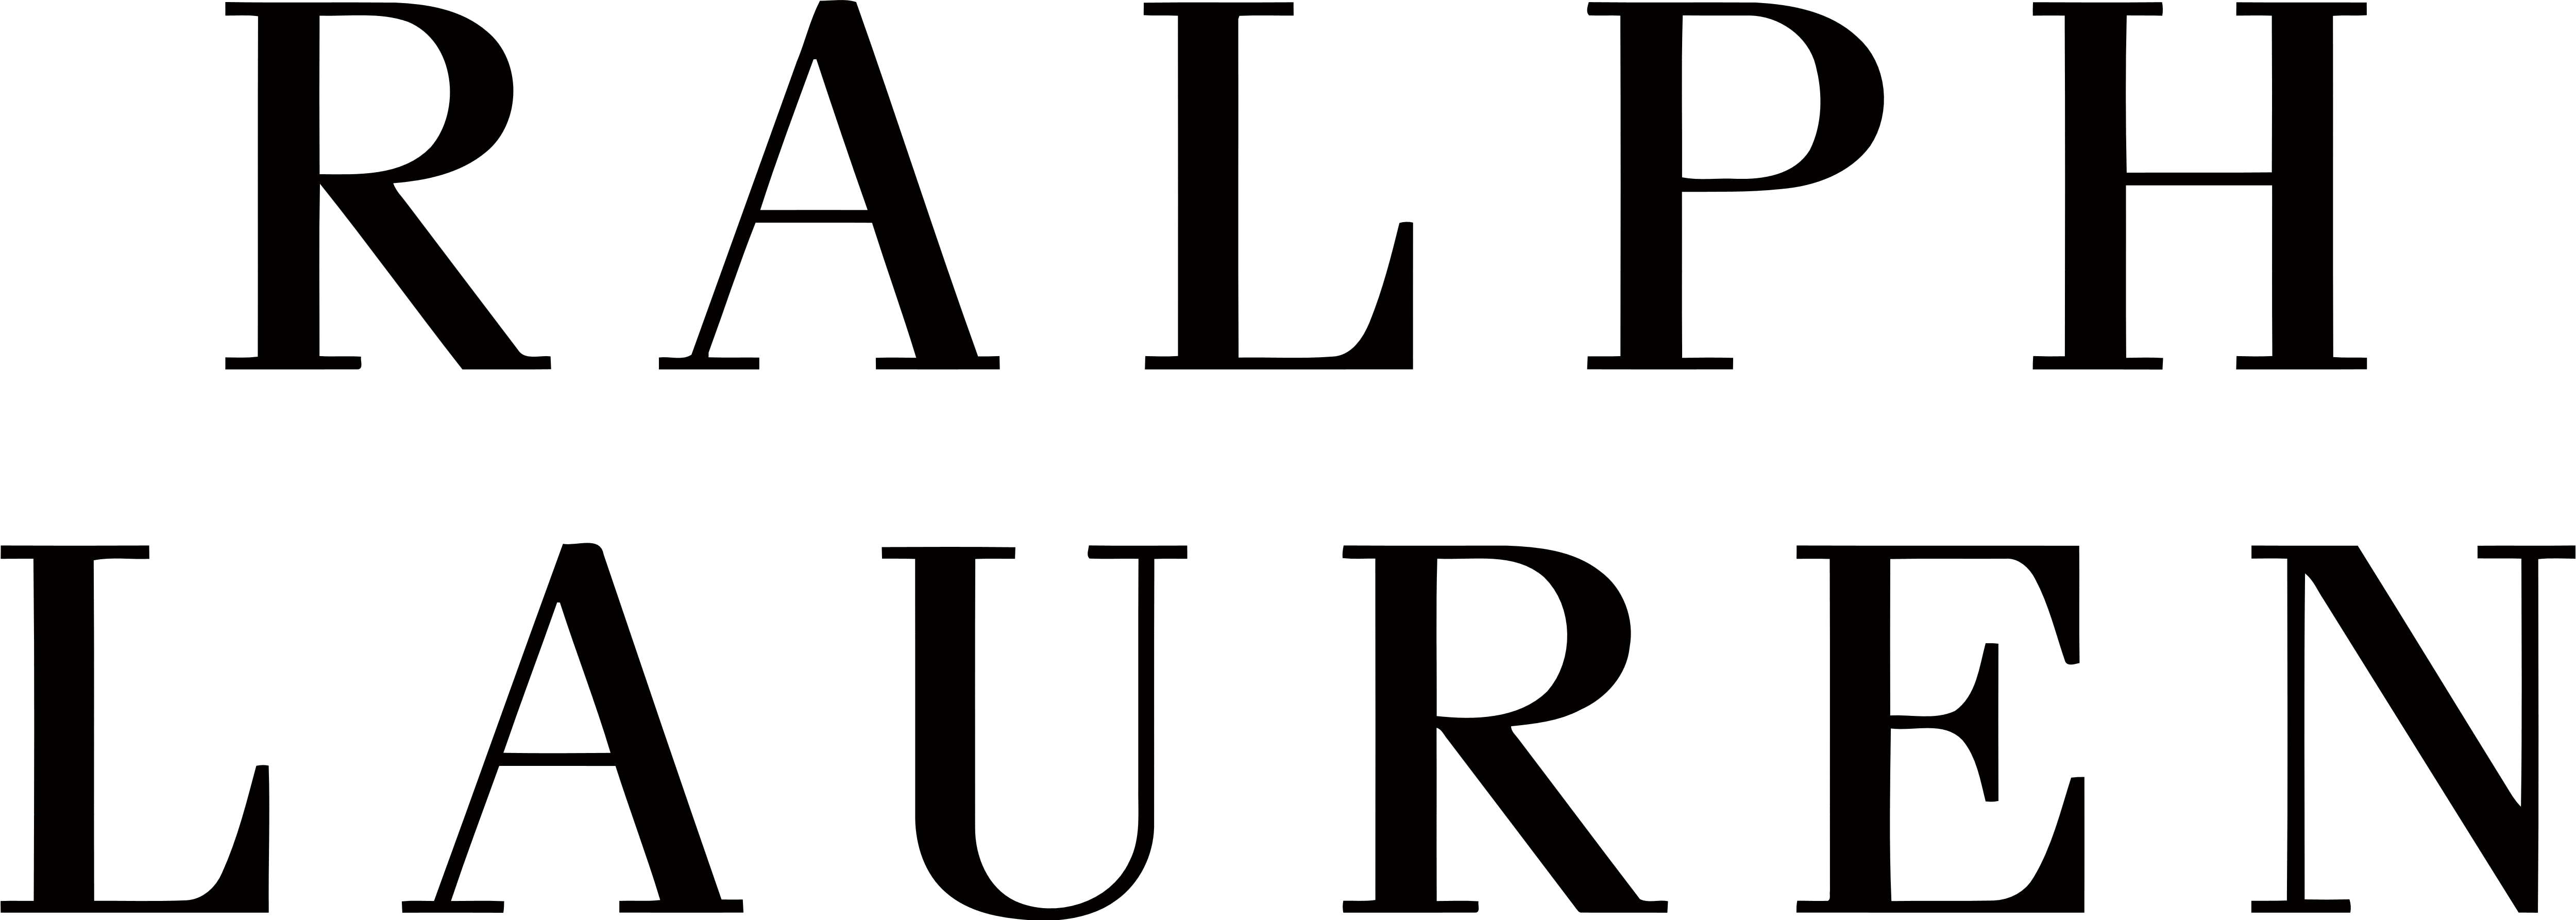 ralph lauren transparent logo